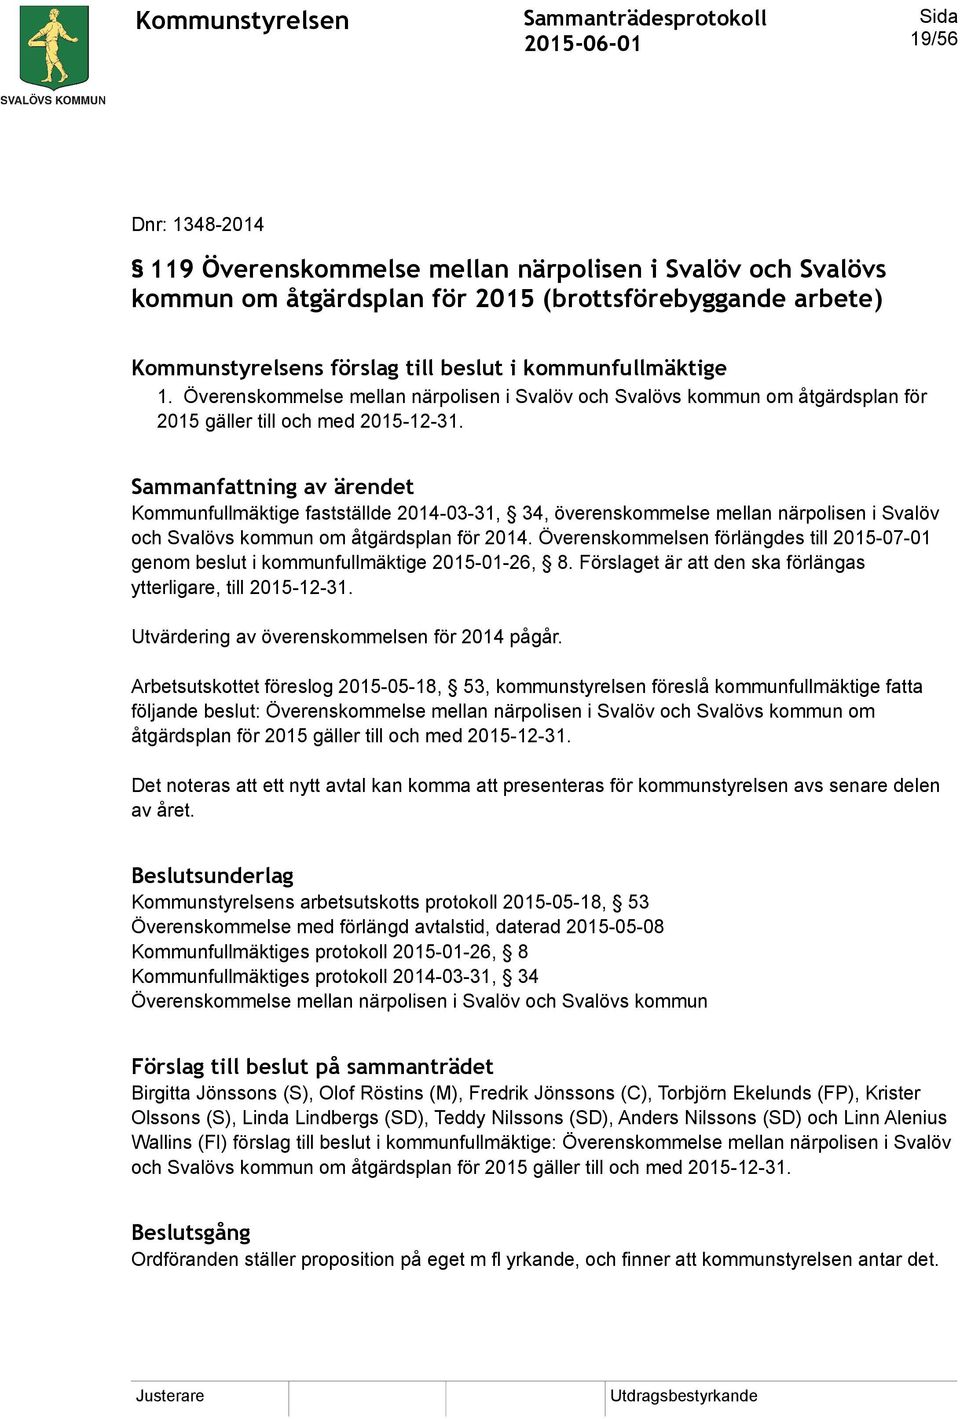 Sammanfattning av ärendet Kommunfullmäktige fastställde 2014-03-31, 34, överenskommelse mellan närpolisen i Svalöv och Svalövs kommun om åtgärdsplan för 2014.